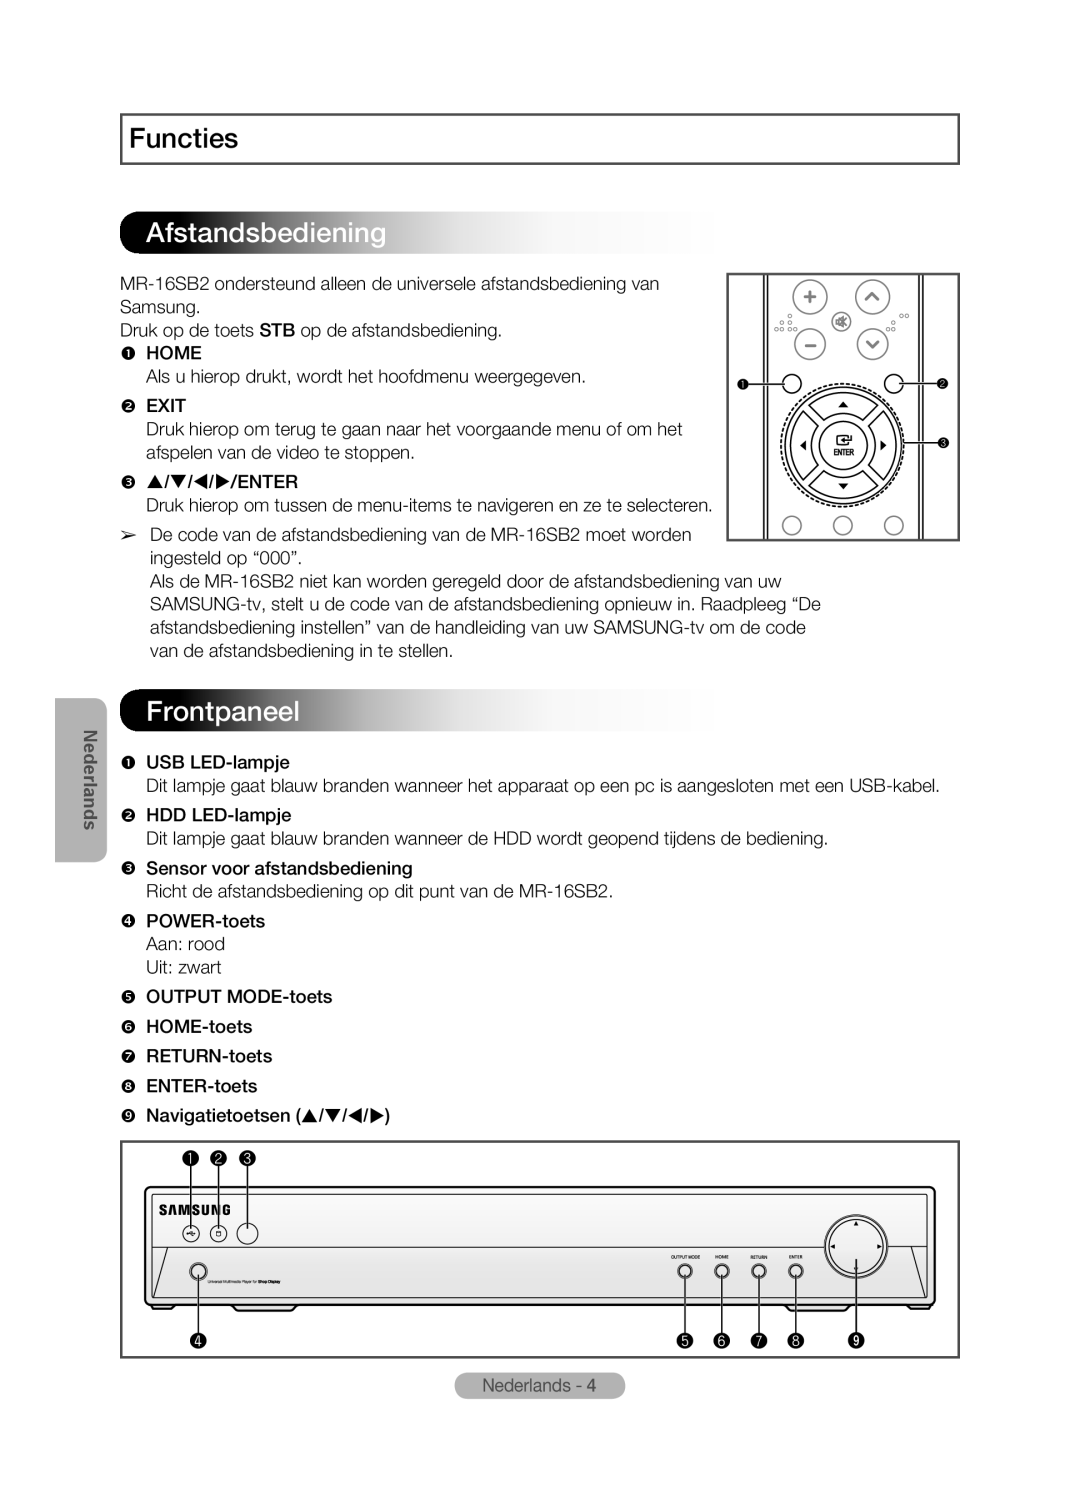 Samsung MR-16SB2 manual Afstandsbediening, Frontpaneel, Functies, Nederlands 